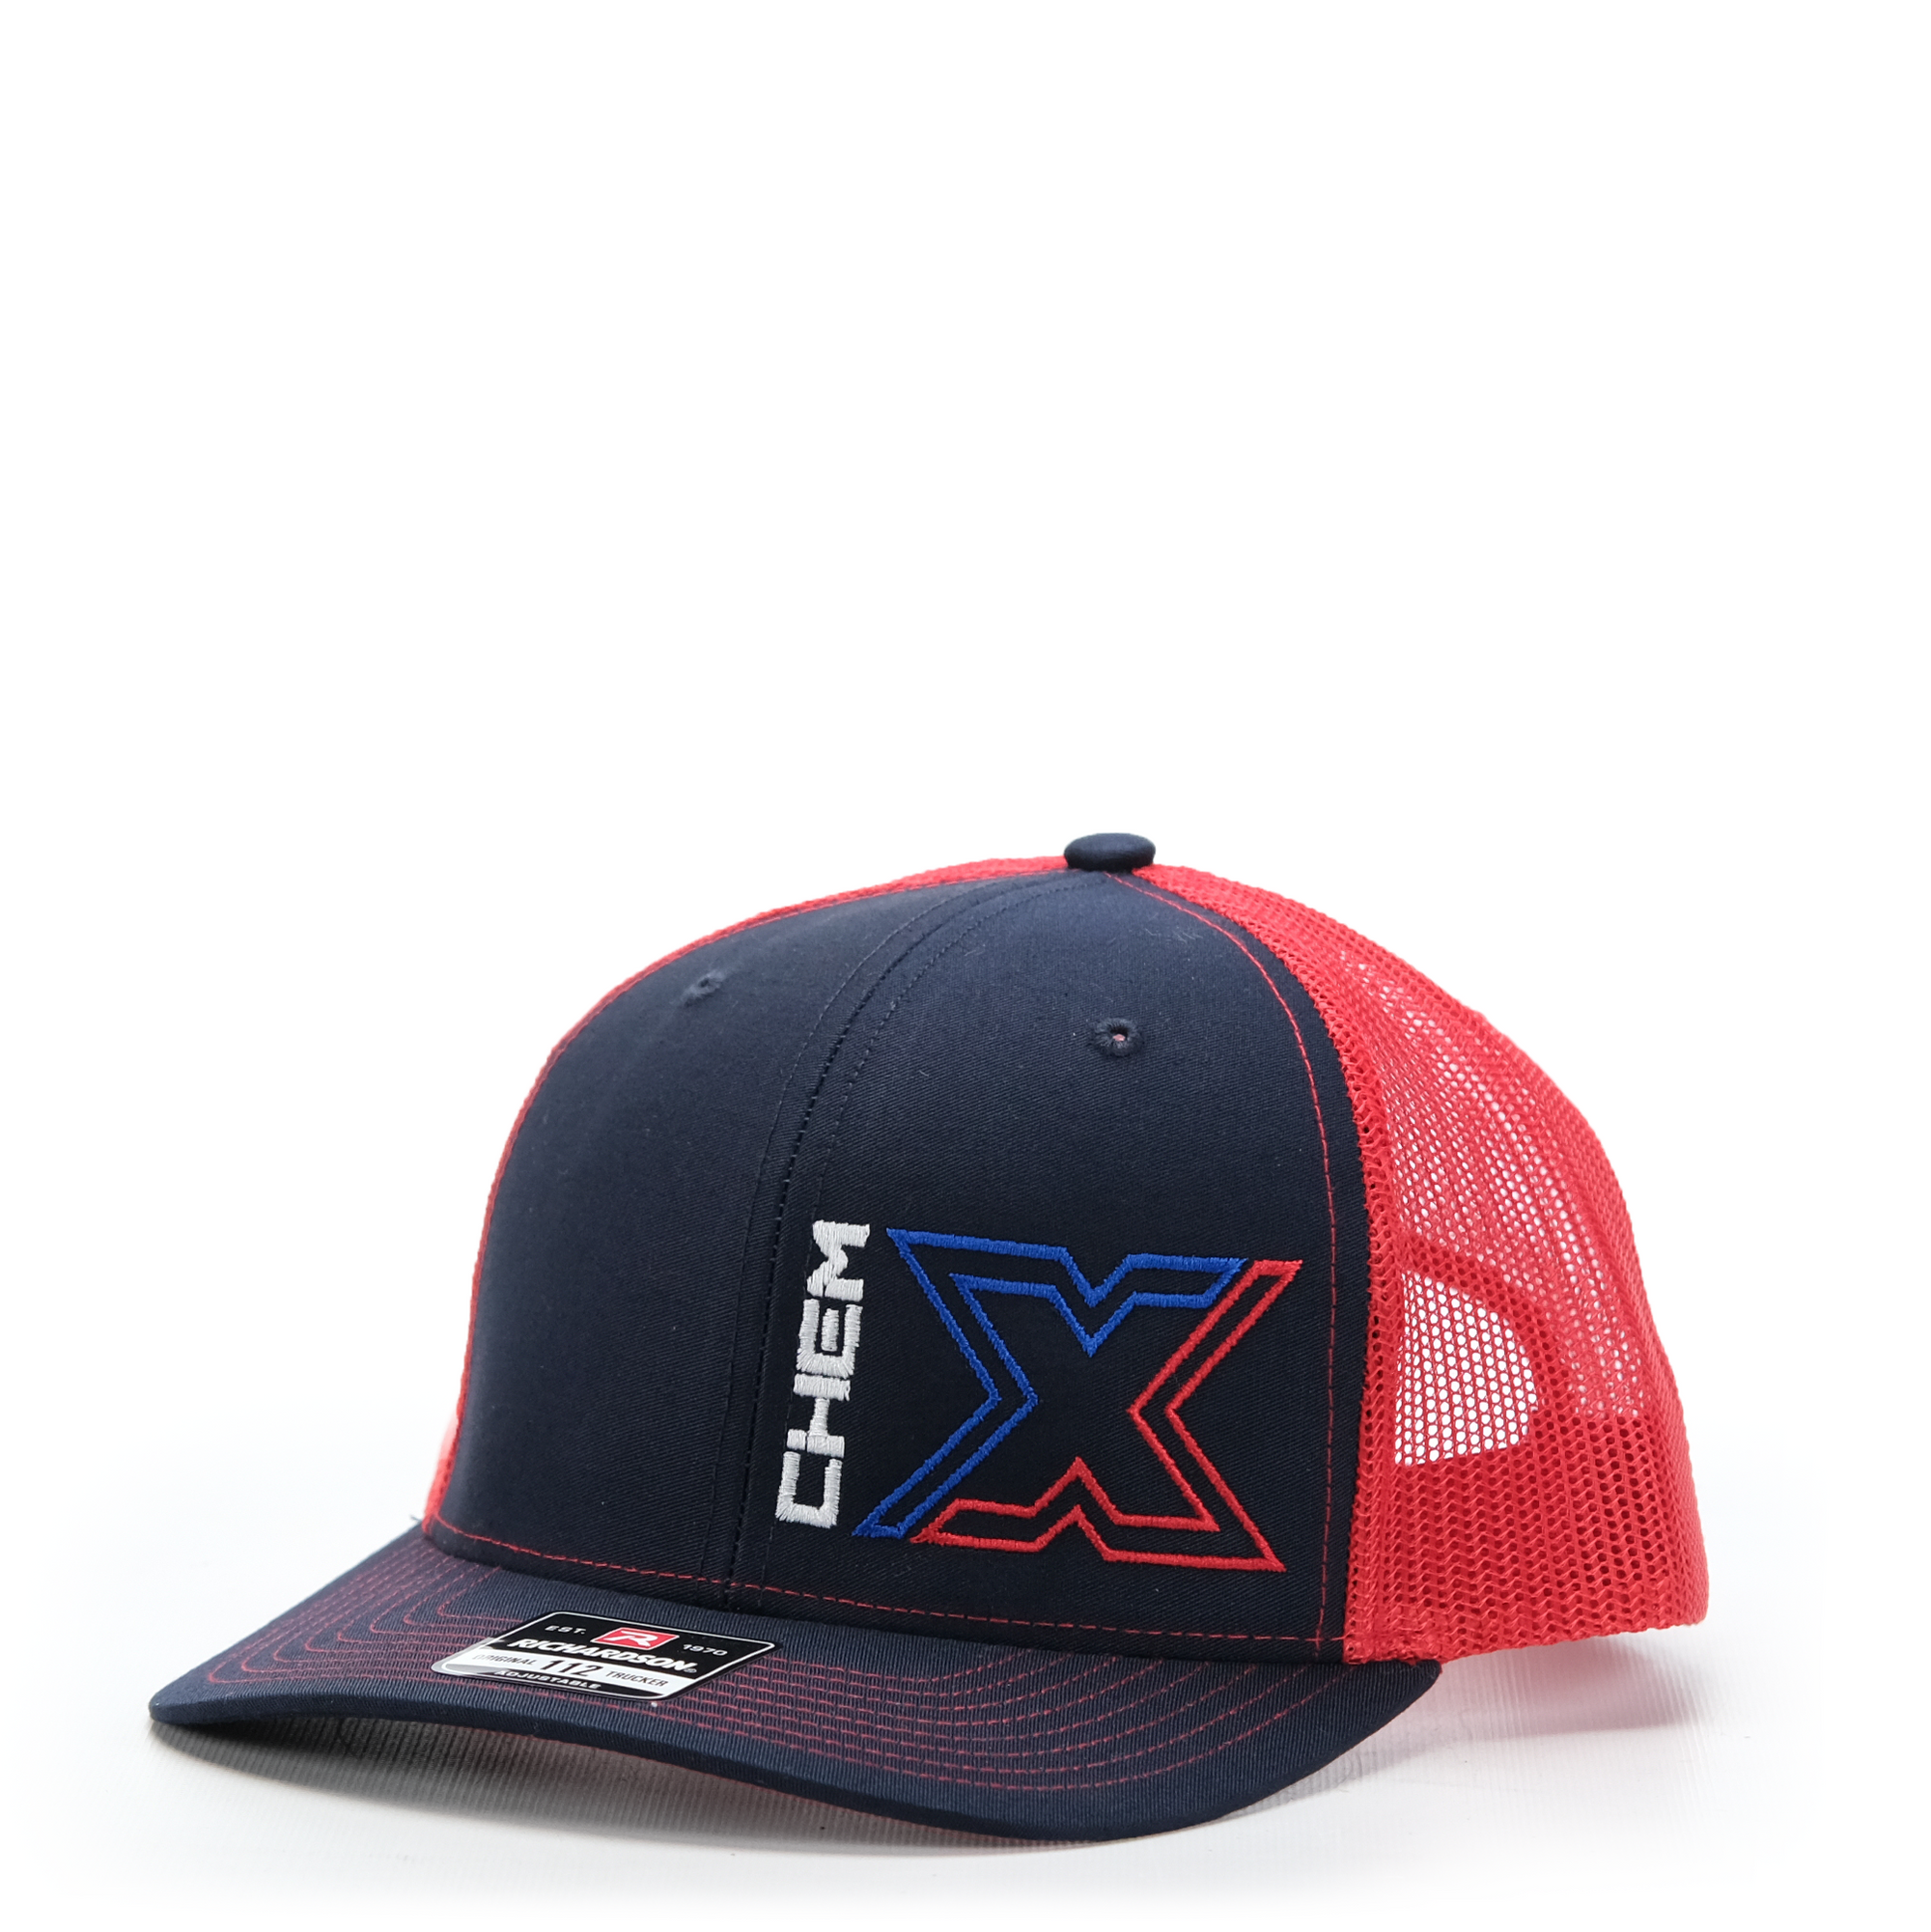 Chem-X Trucker Hat: Richardson 112 Midnight Navy / Red